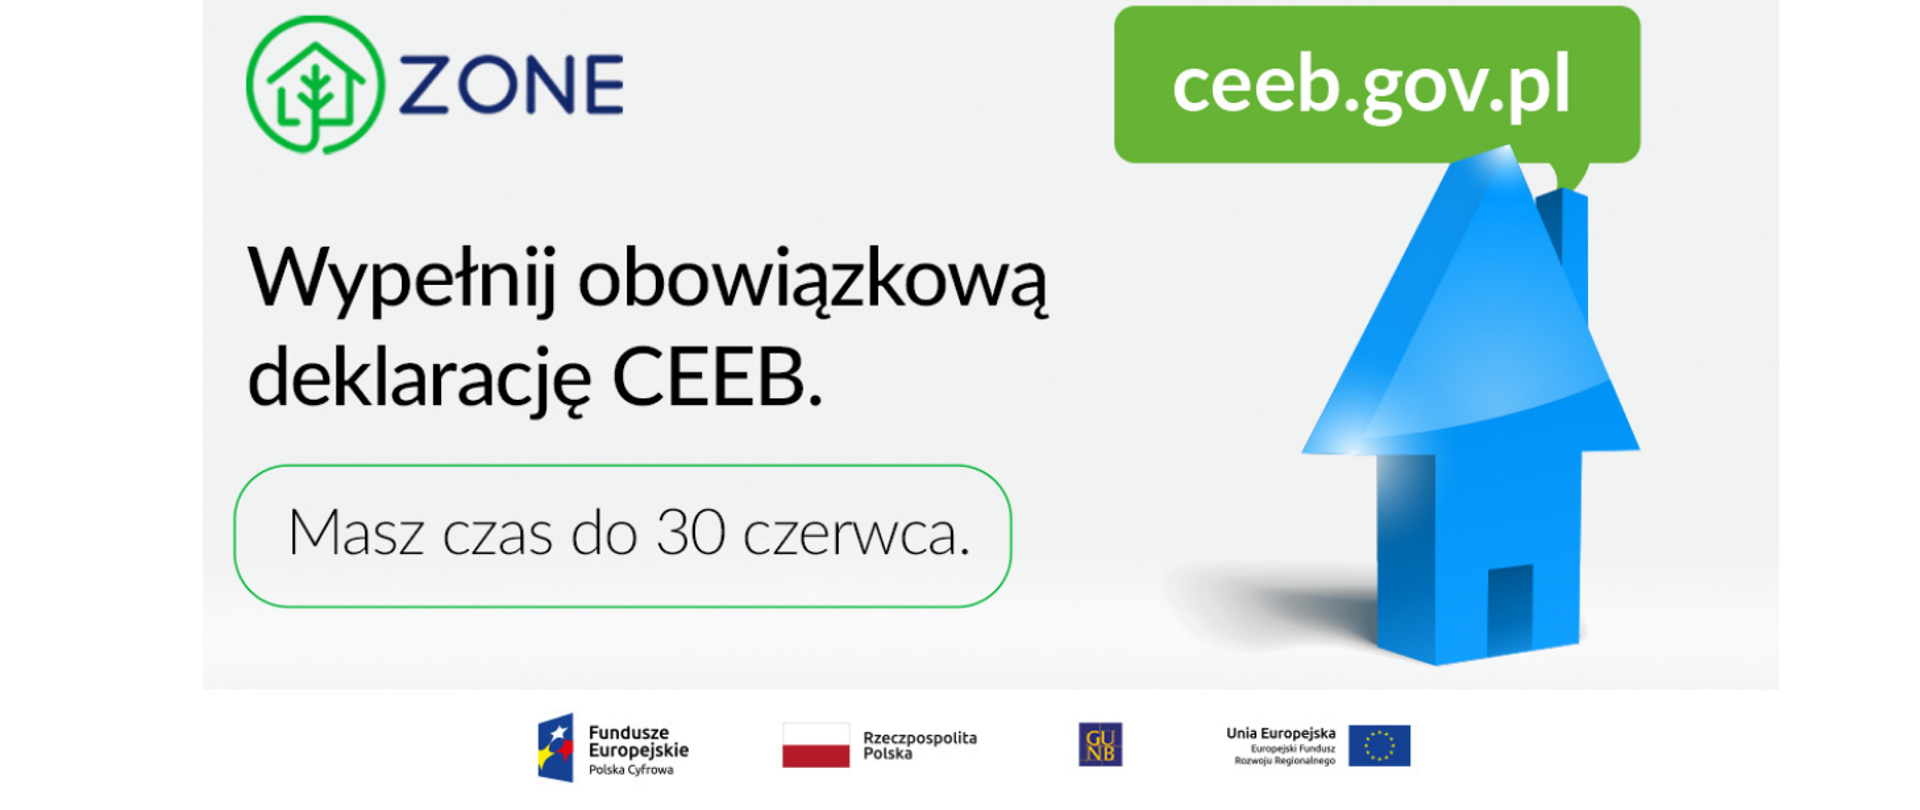 Baner z adresem ceeb.gov.pl - Wypełnij obowiązkową deklarację CEEB